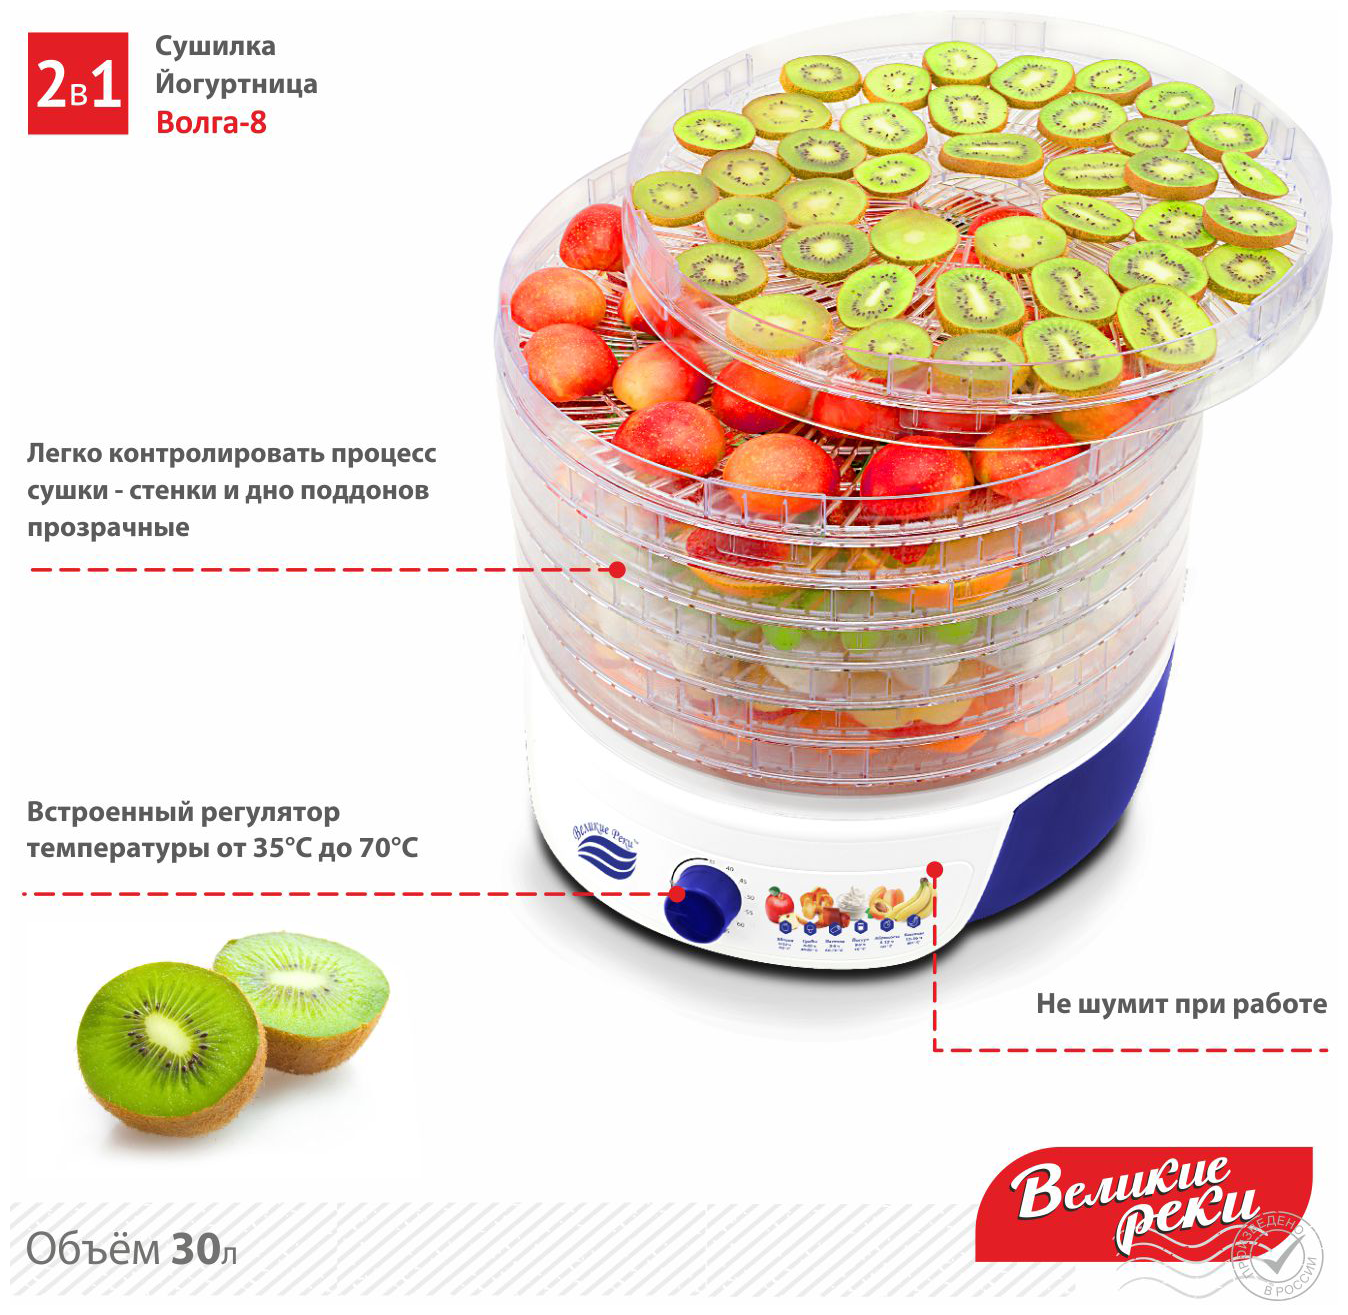 Сушилка для овощей и фруктов ВЕЛИКИЕ РЕКИ Волга-8, прозрачный, 8шт - фото №3